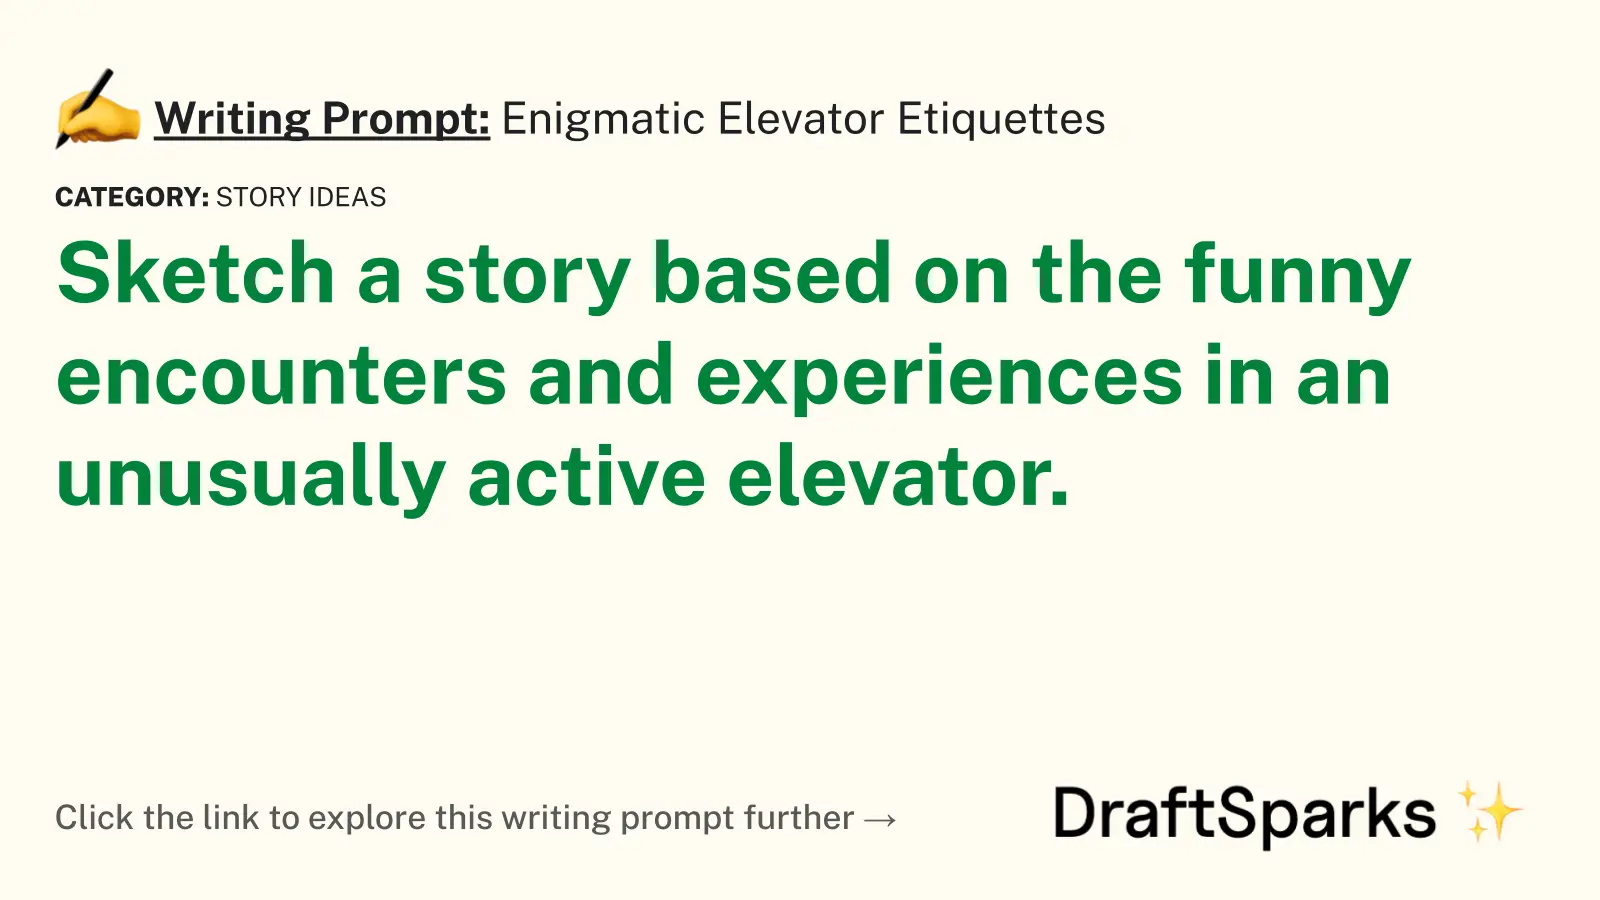 Enigmatic Elevator Etiquettes